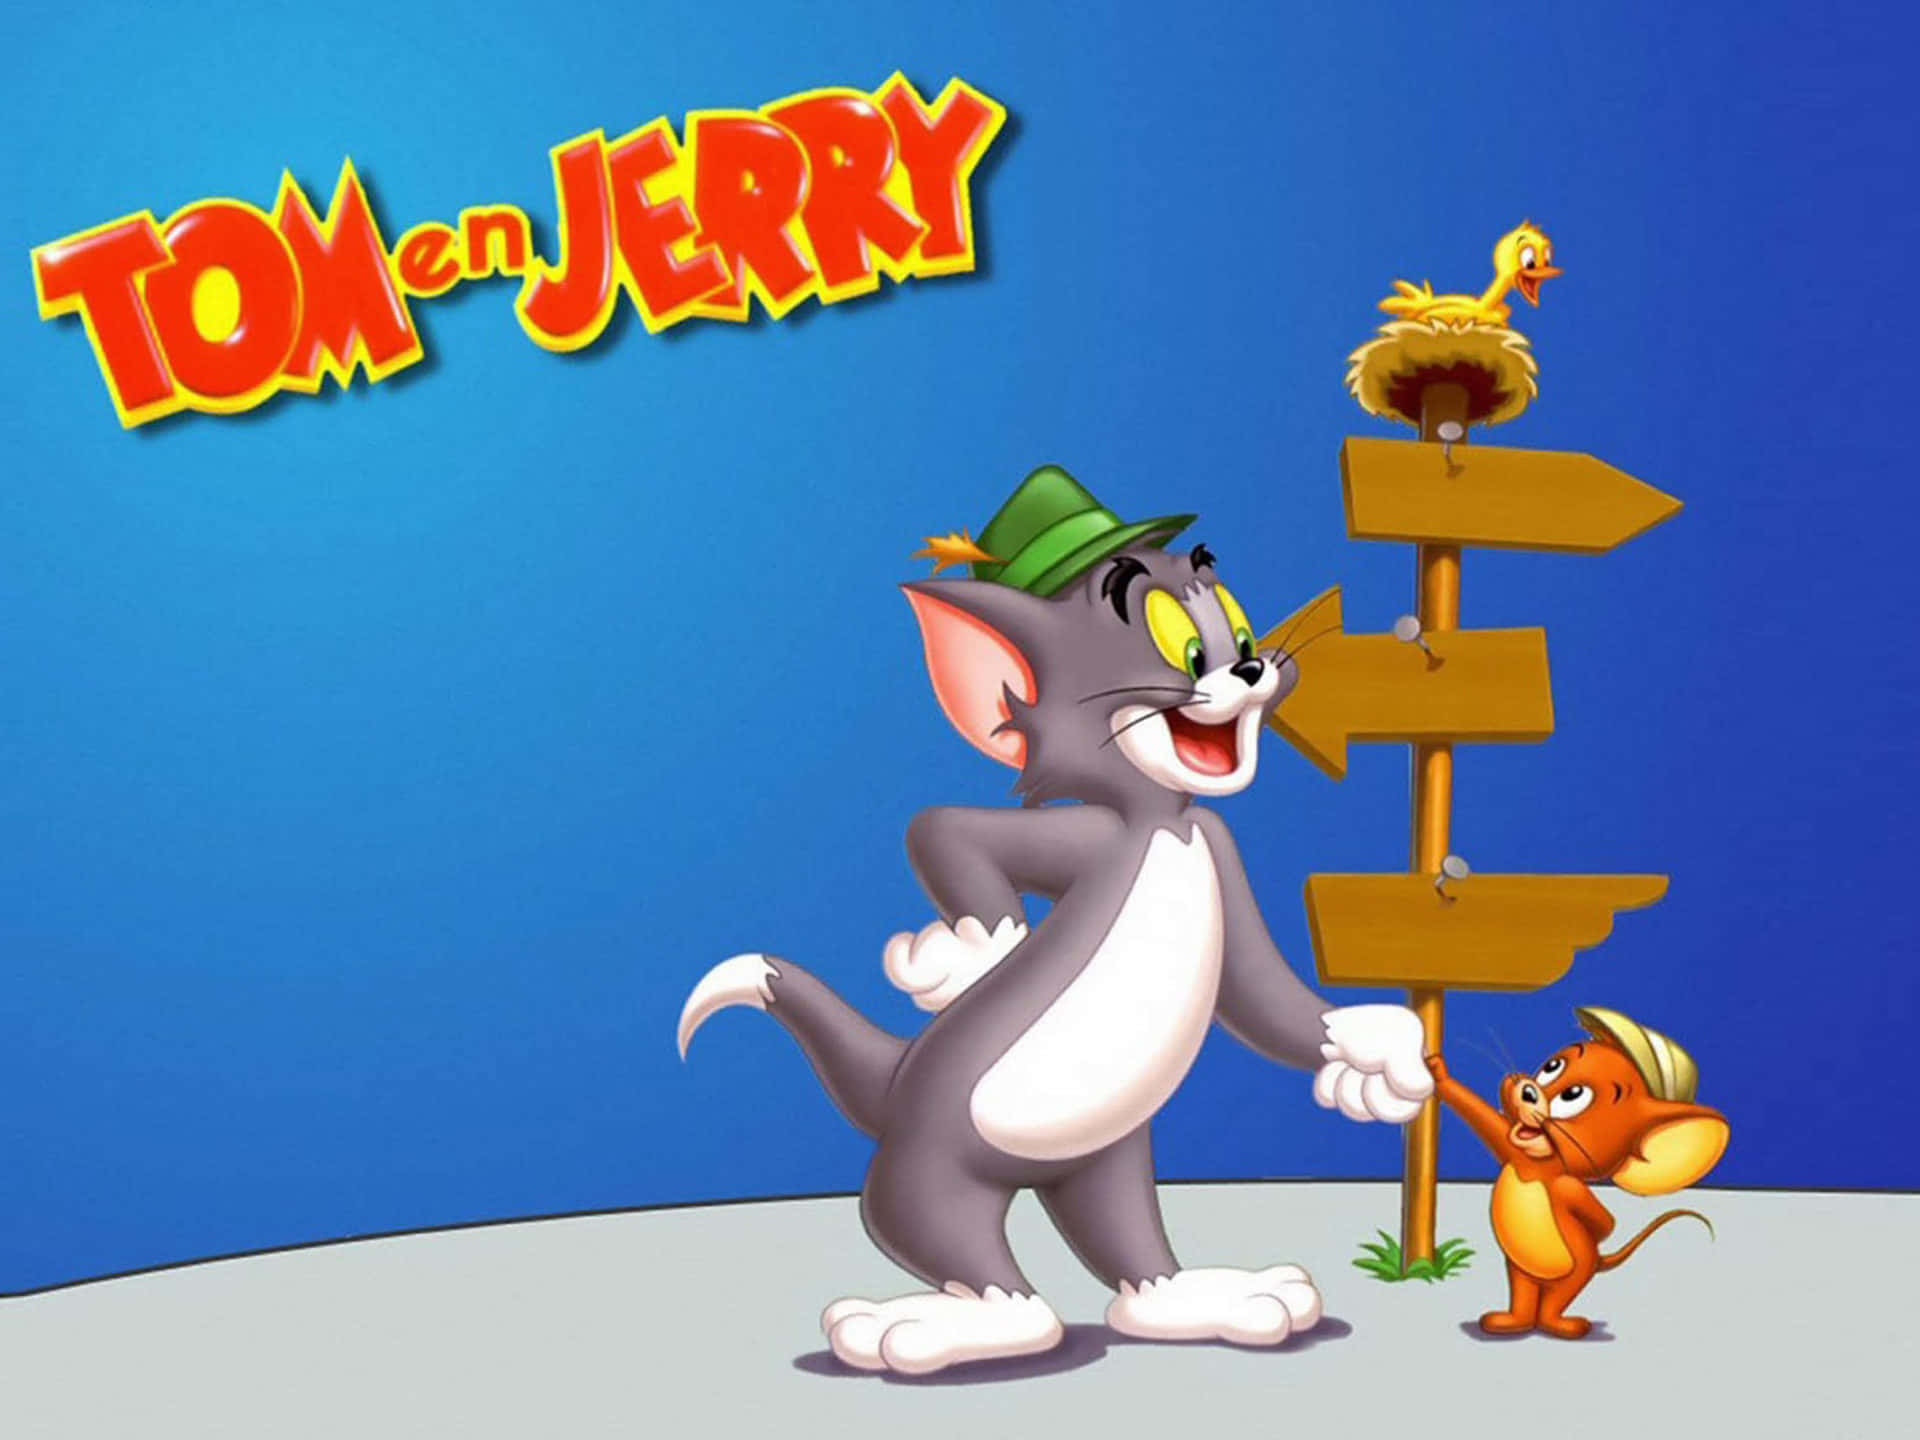 Posterimmagine Del Personaggio Di Tom E Jerry Del Cartone Animato.